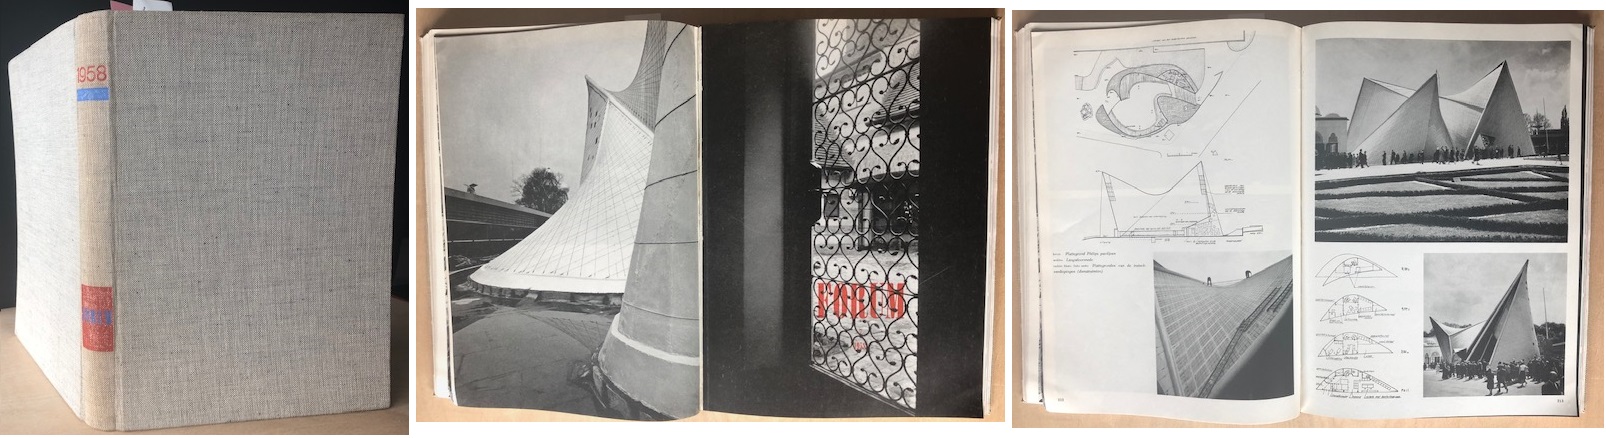 FORUM. Maandblad voor architectuur en gebonden kunst. - 13e jaargang. 1958.